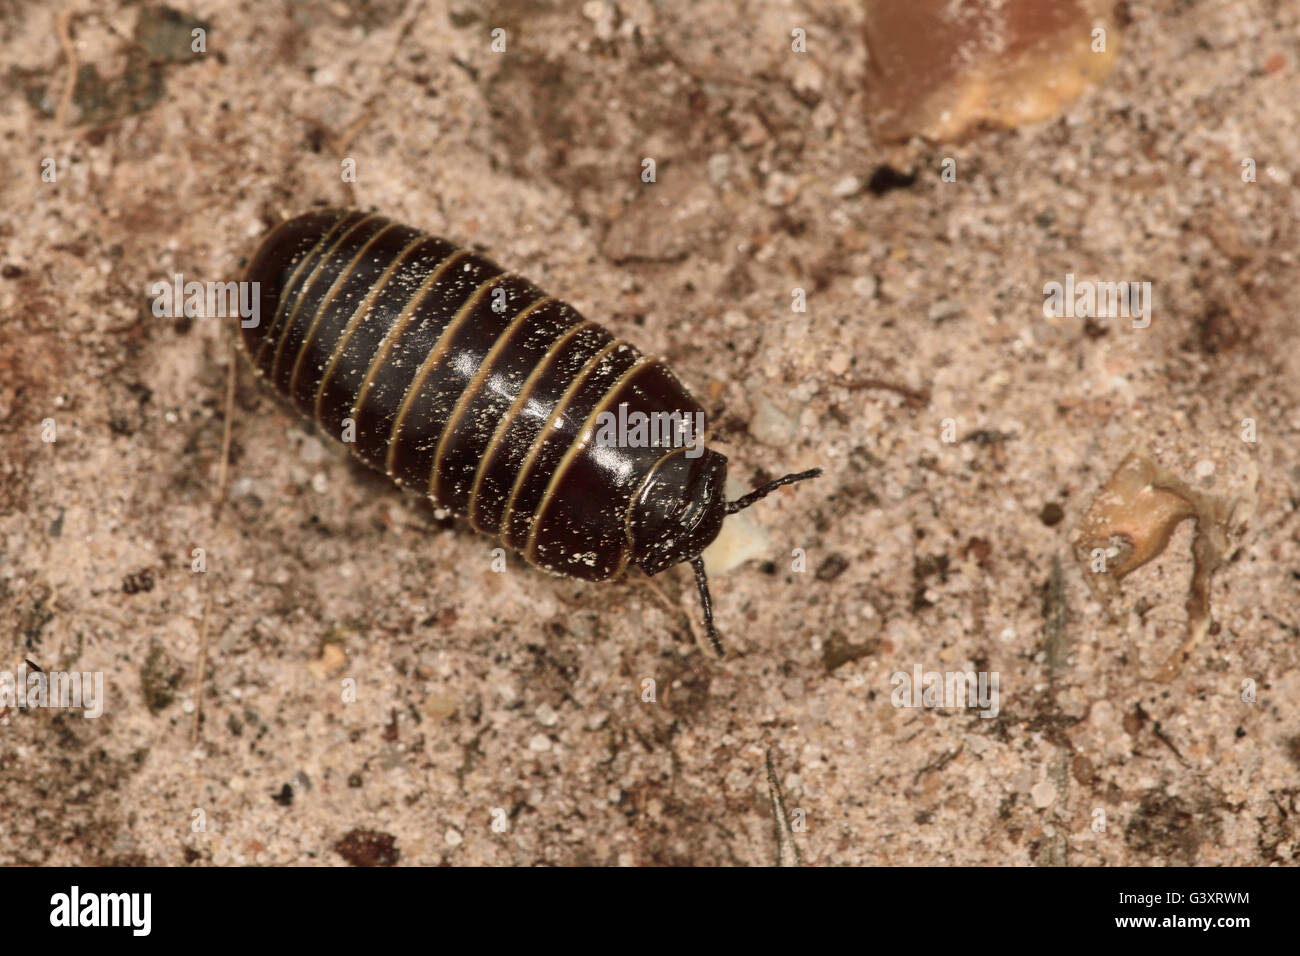 Pill Millipede (Glomeris marginata) on sandy soil. Stock Photo